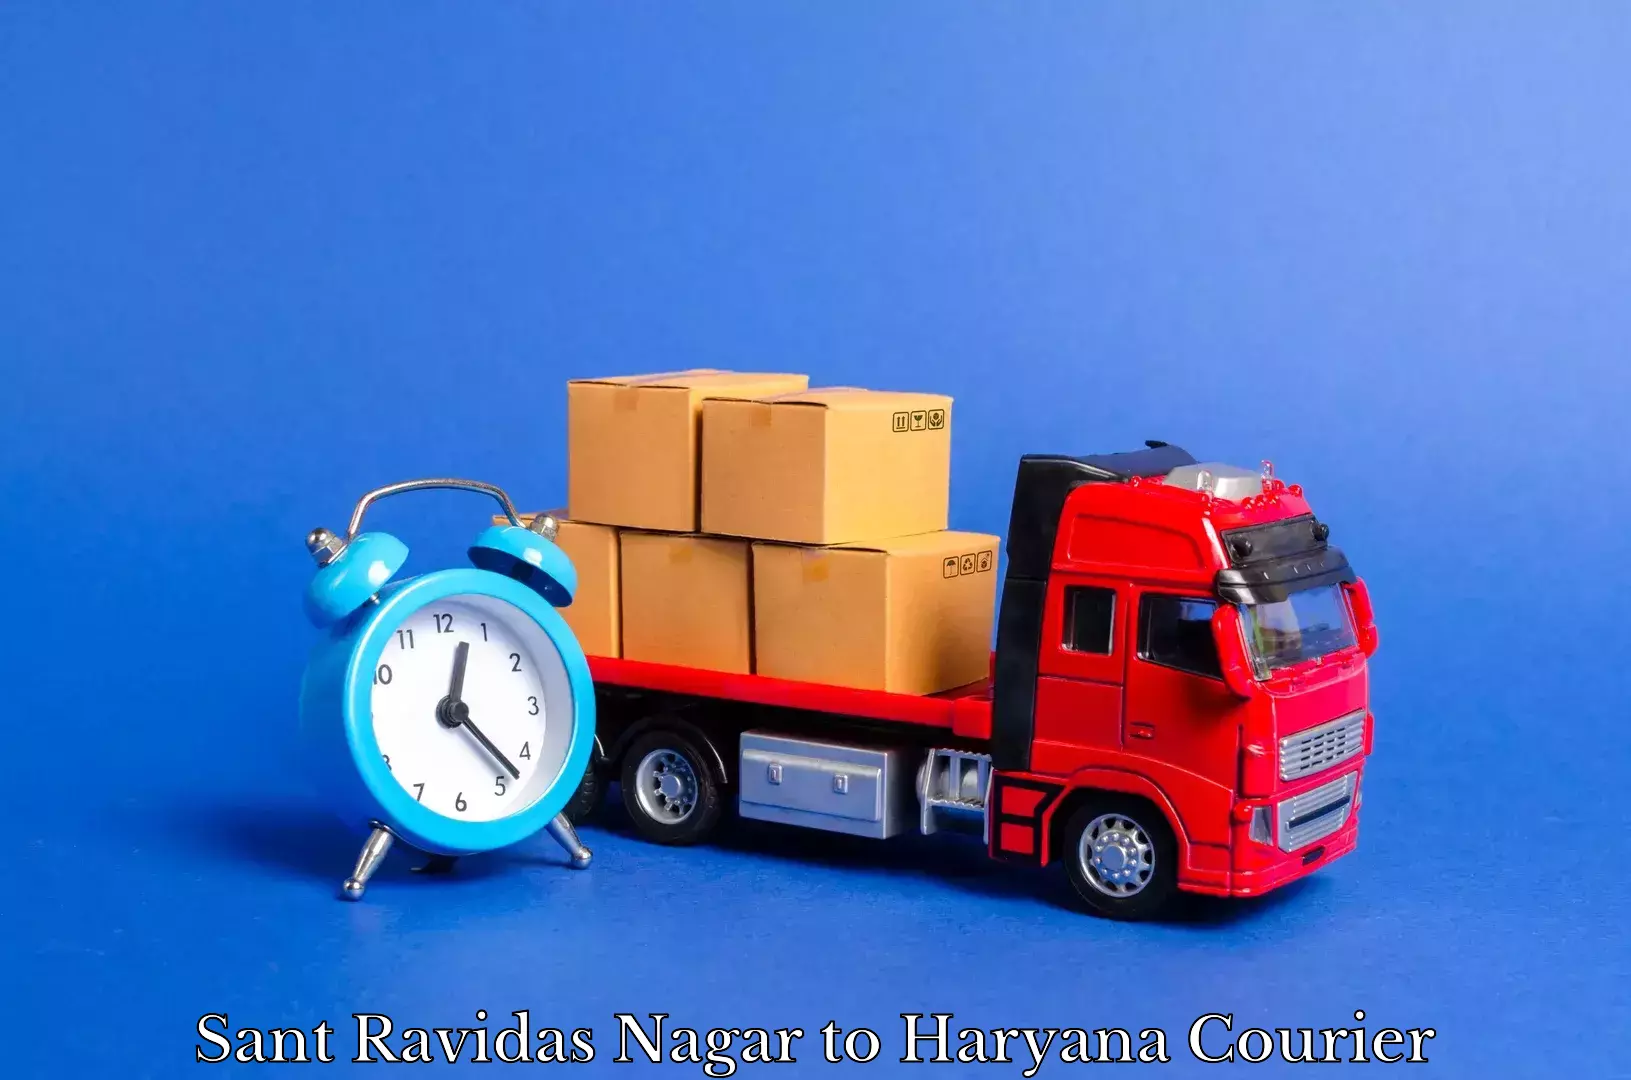 Tailored moving packages Sant Ravidas Nagar to Chaudhary Charan Singh Haryana Agricultural University Hisar